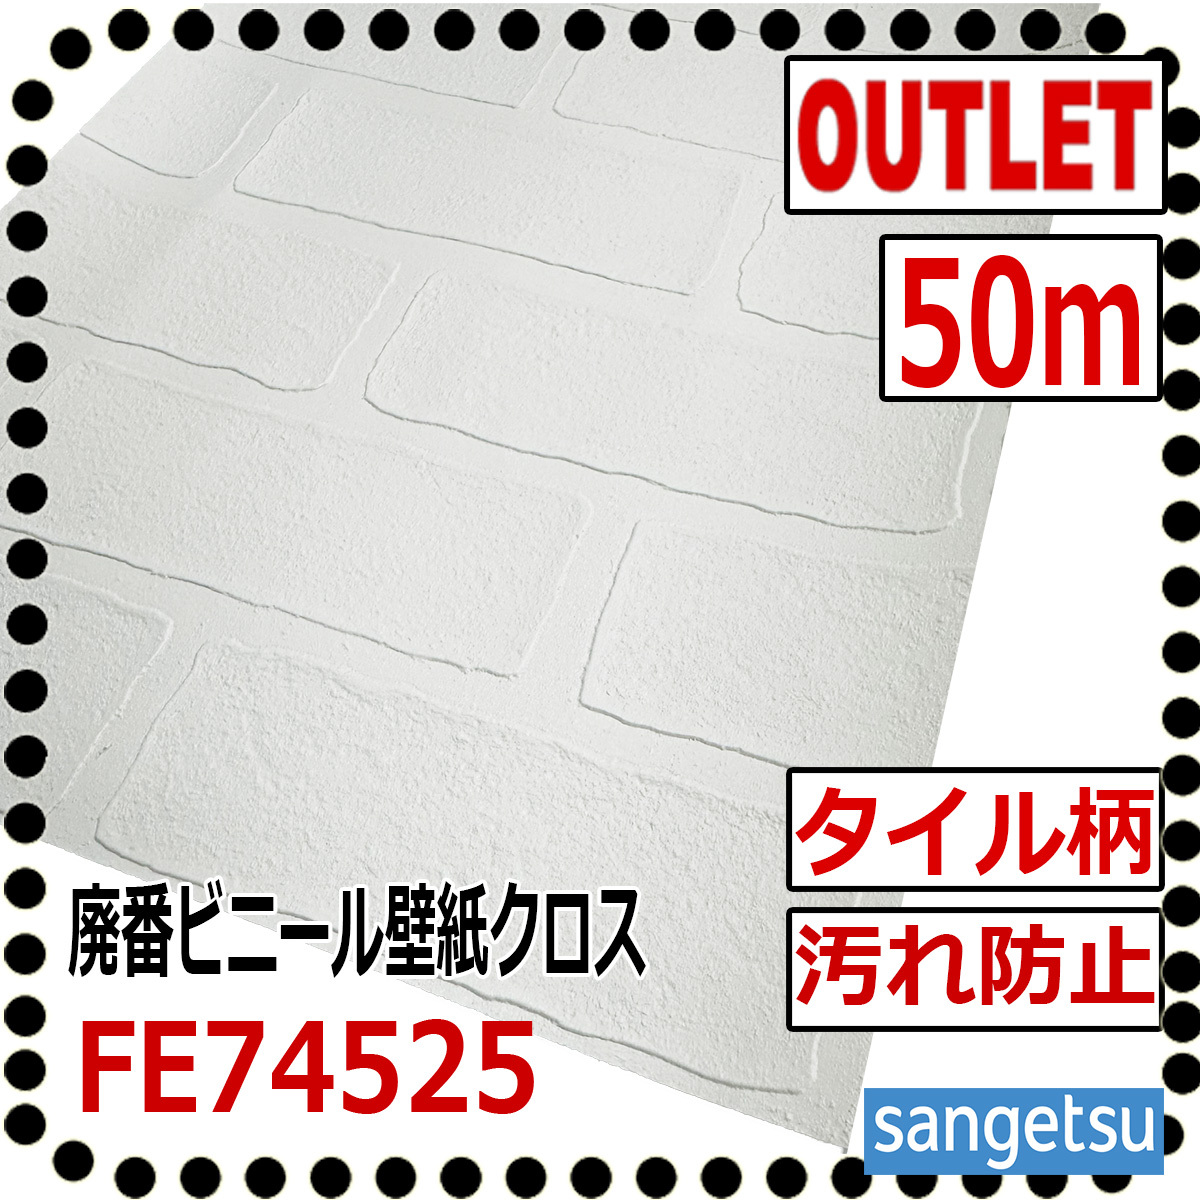 [Sangetsu Outlet] Открытый виниловый кросс -популярный паттерн белой плитки FE74525